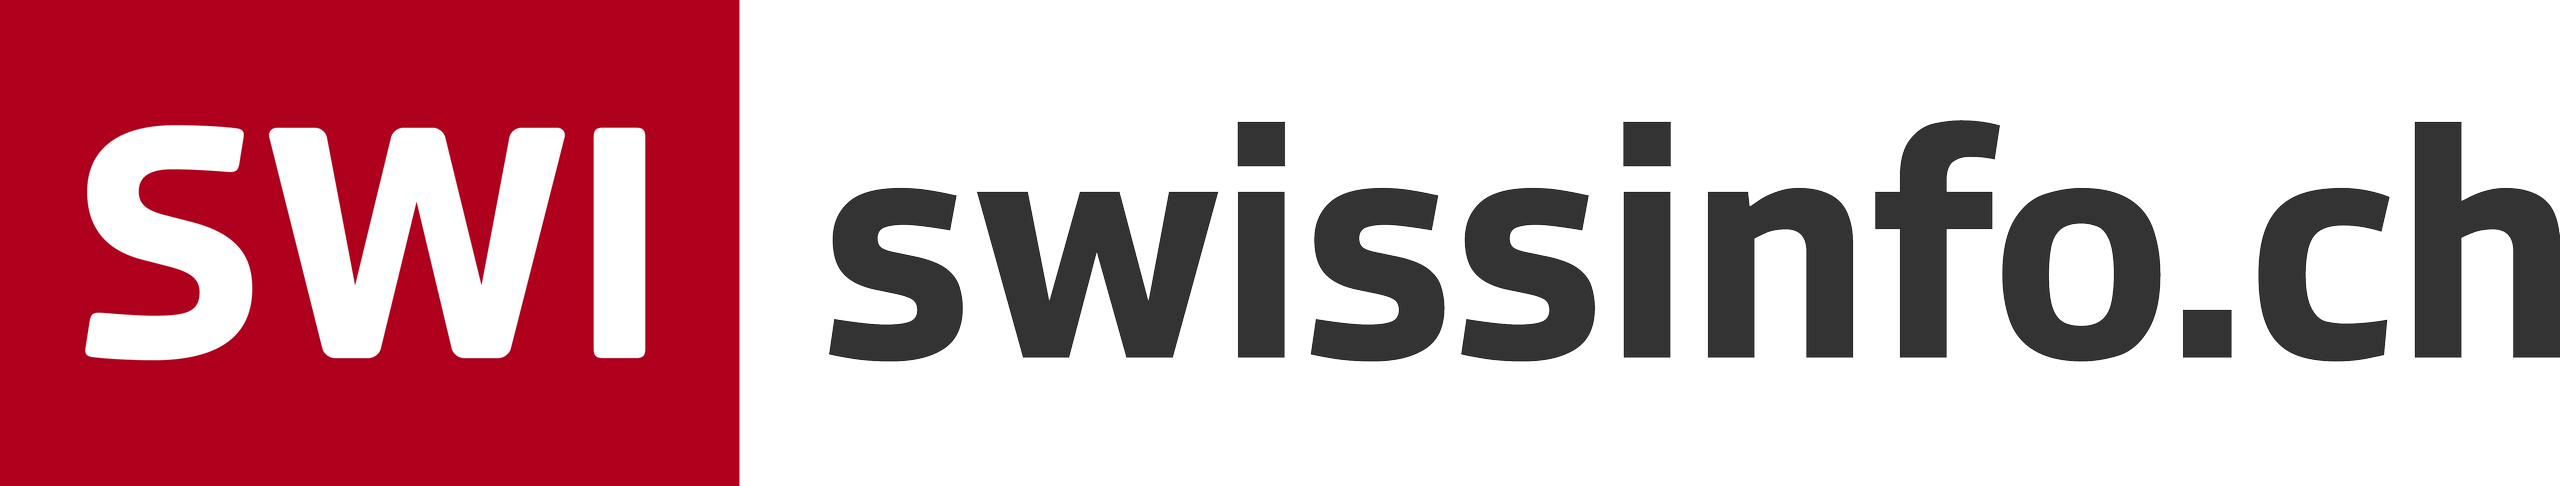 SWI swissinfo.ch-Logo gross